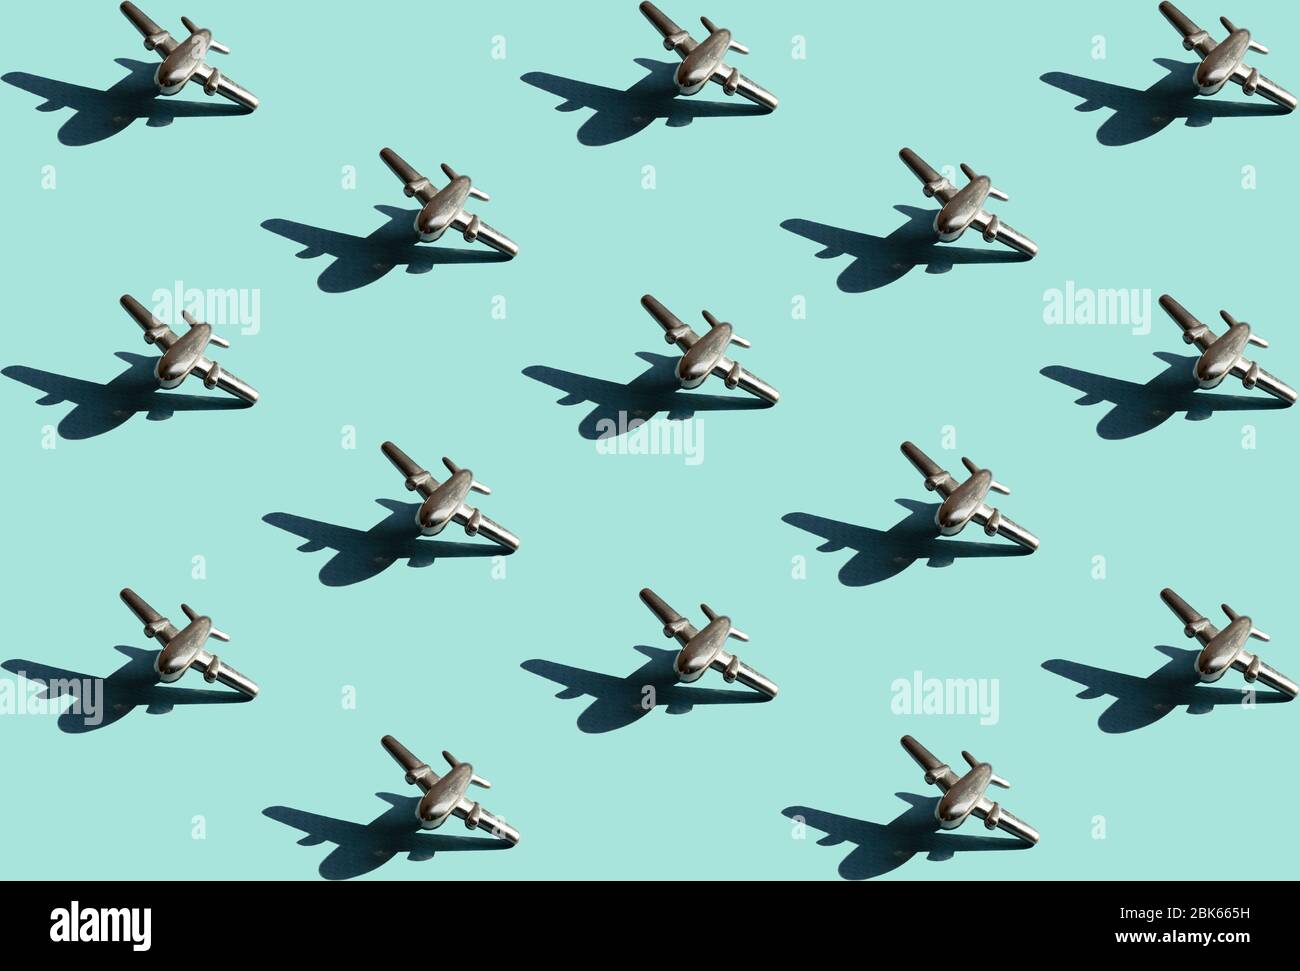 Fünfzehn Metallfiguren von kleinen Flugzeugen mit Schatten mit dem gleichen Abstand zwischen ihnen auf dem hellen mintfarbenen Hintergrund. Konzeptuelle geometrische Kunst tr Stockfoto